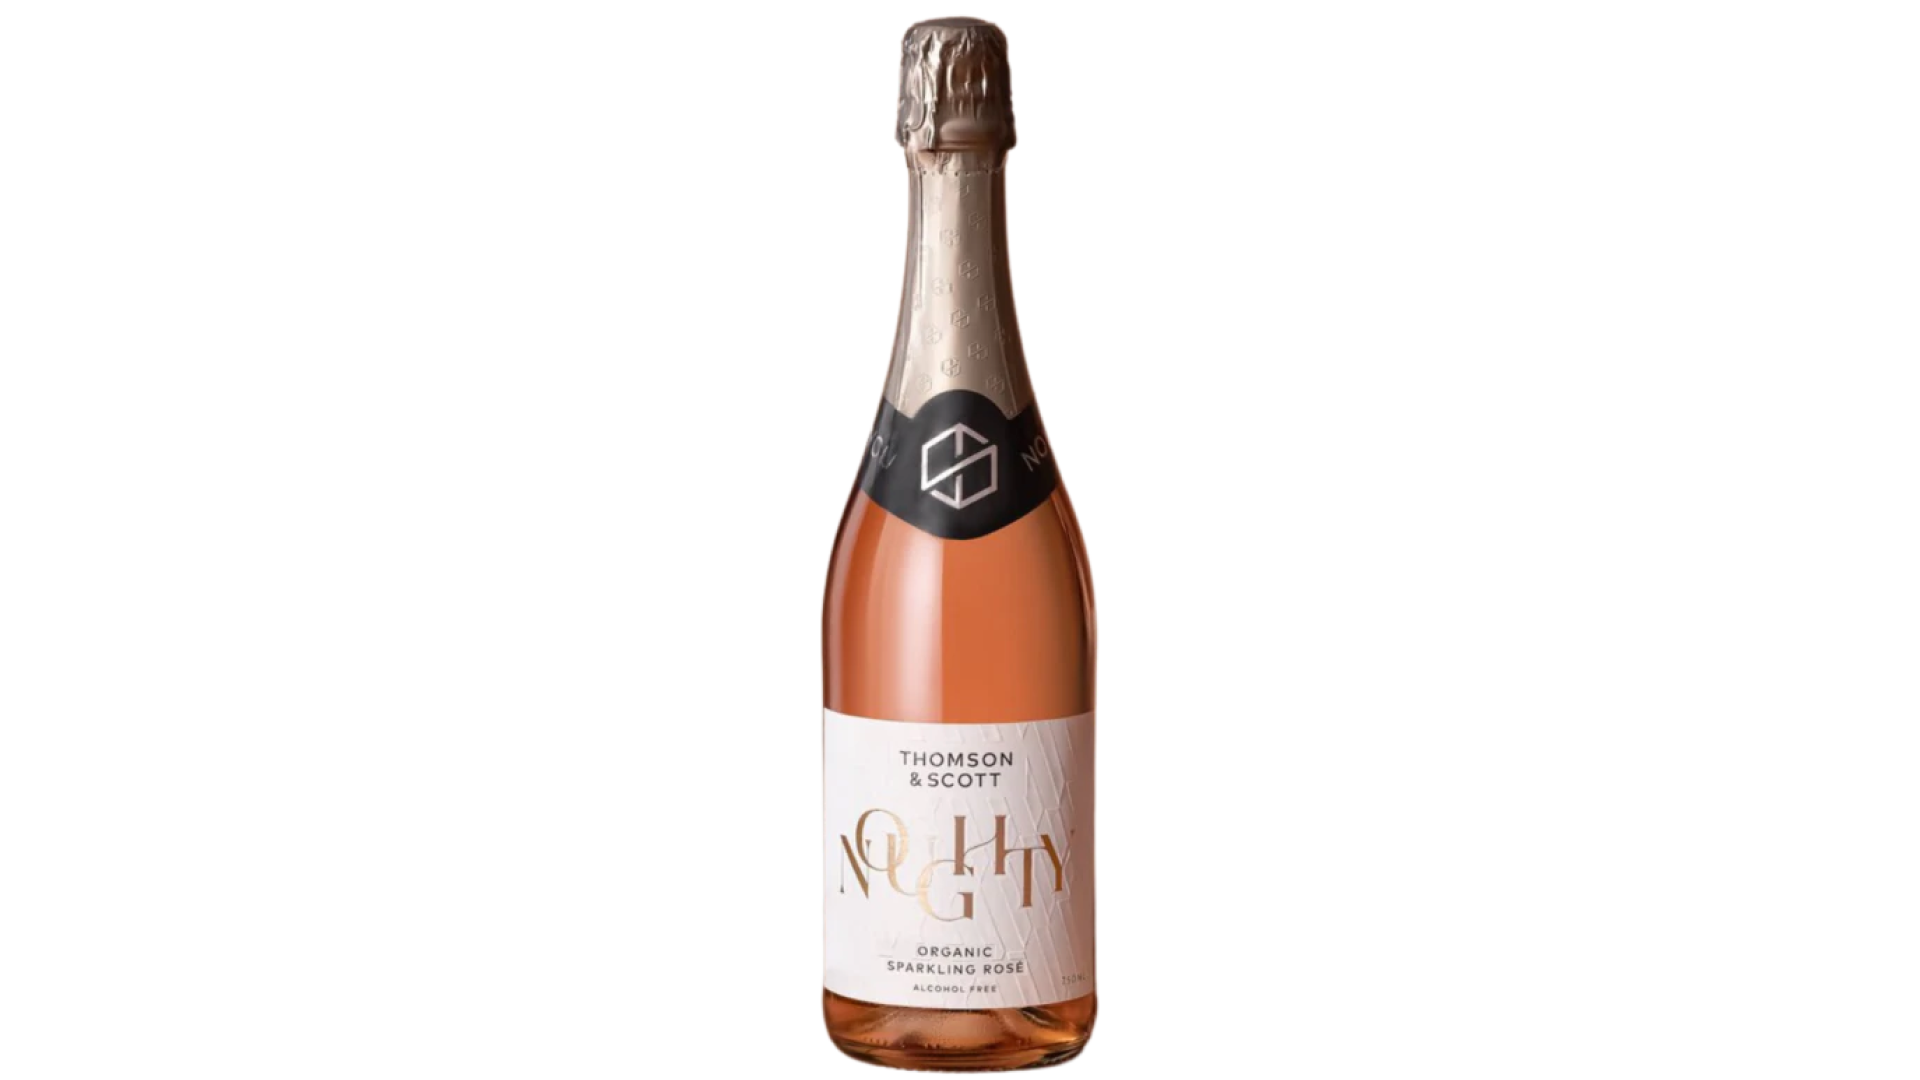 A bottle of Thomson & Scott sparkling rosé